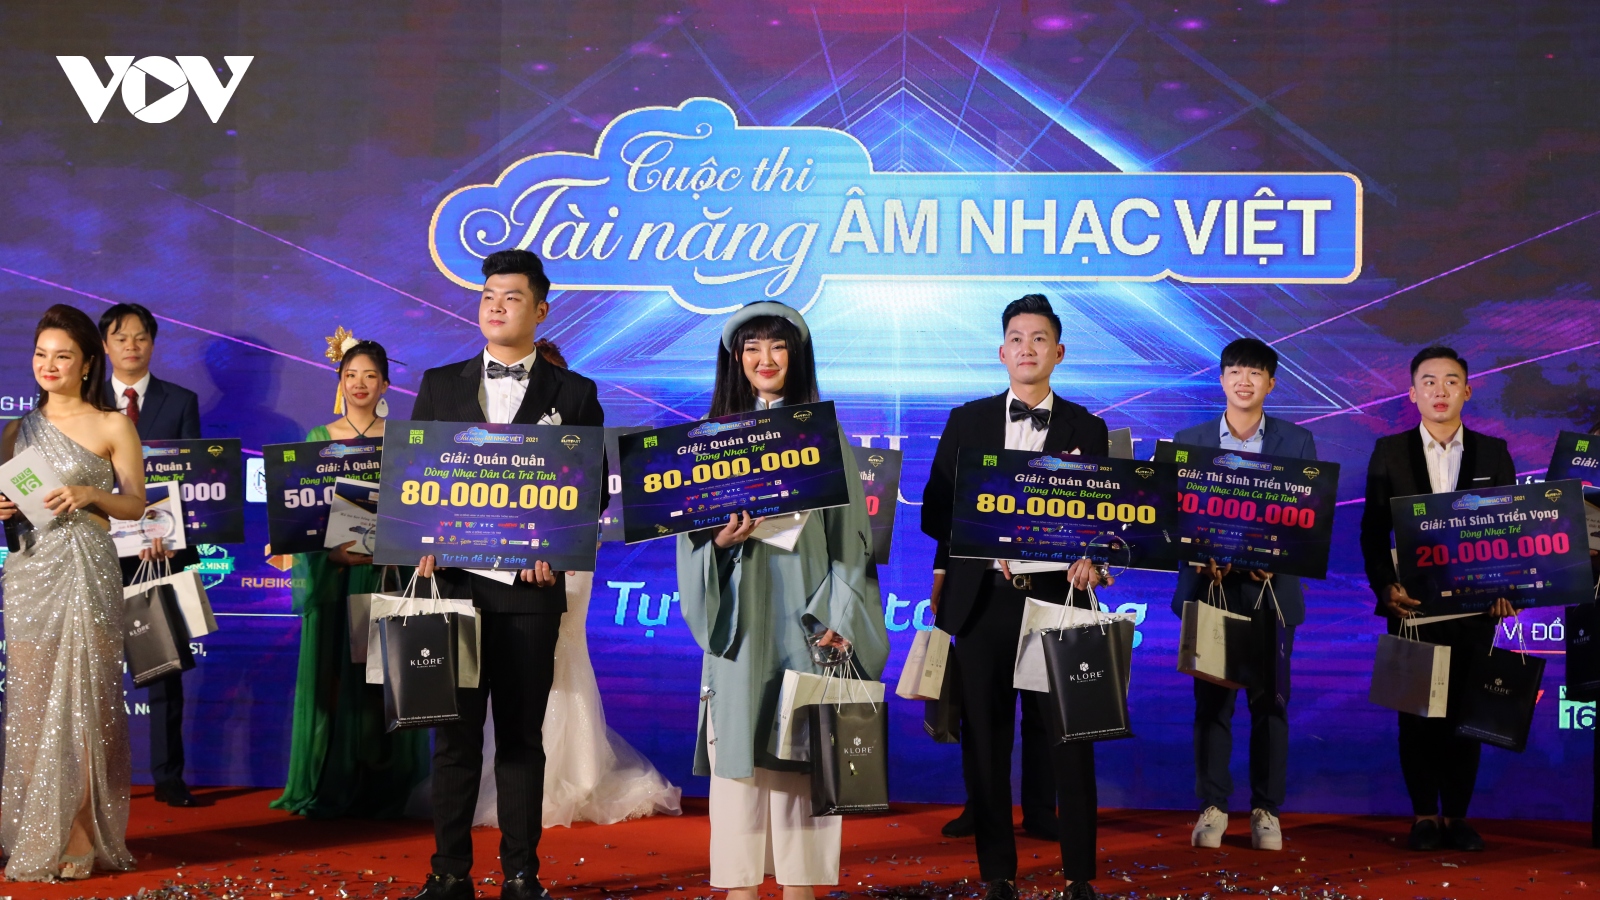 Trao 15 giải cho các thí sinh trong đêm chung kết "Tài năng âm nhạc Việt"